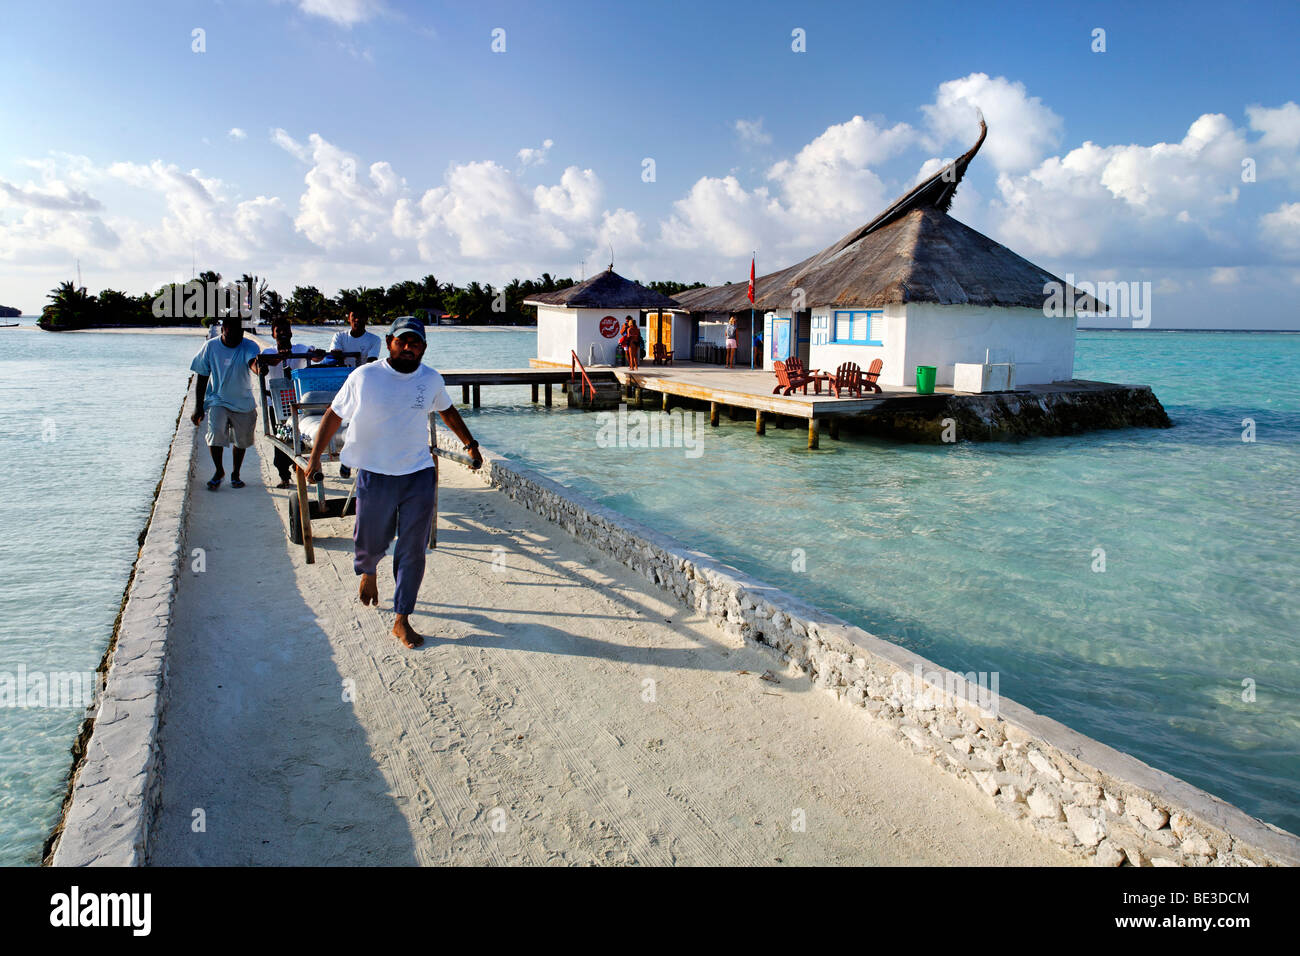 Malediver an einem Steg zu tragen aus Aluminium Tauchen Panzer, Malediven Insel, Süd Male Atoll, Malediven, Achipelago, Asien, Indischer Ozean Stockfoto